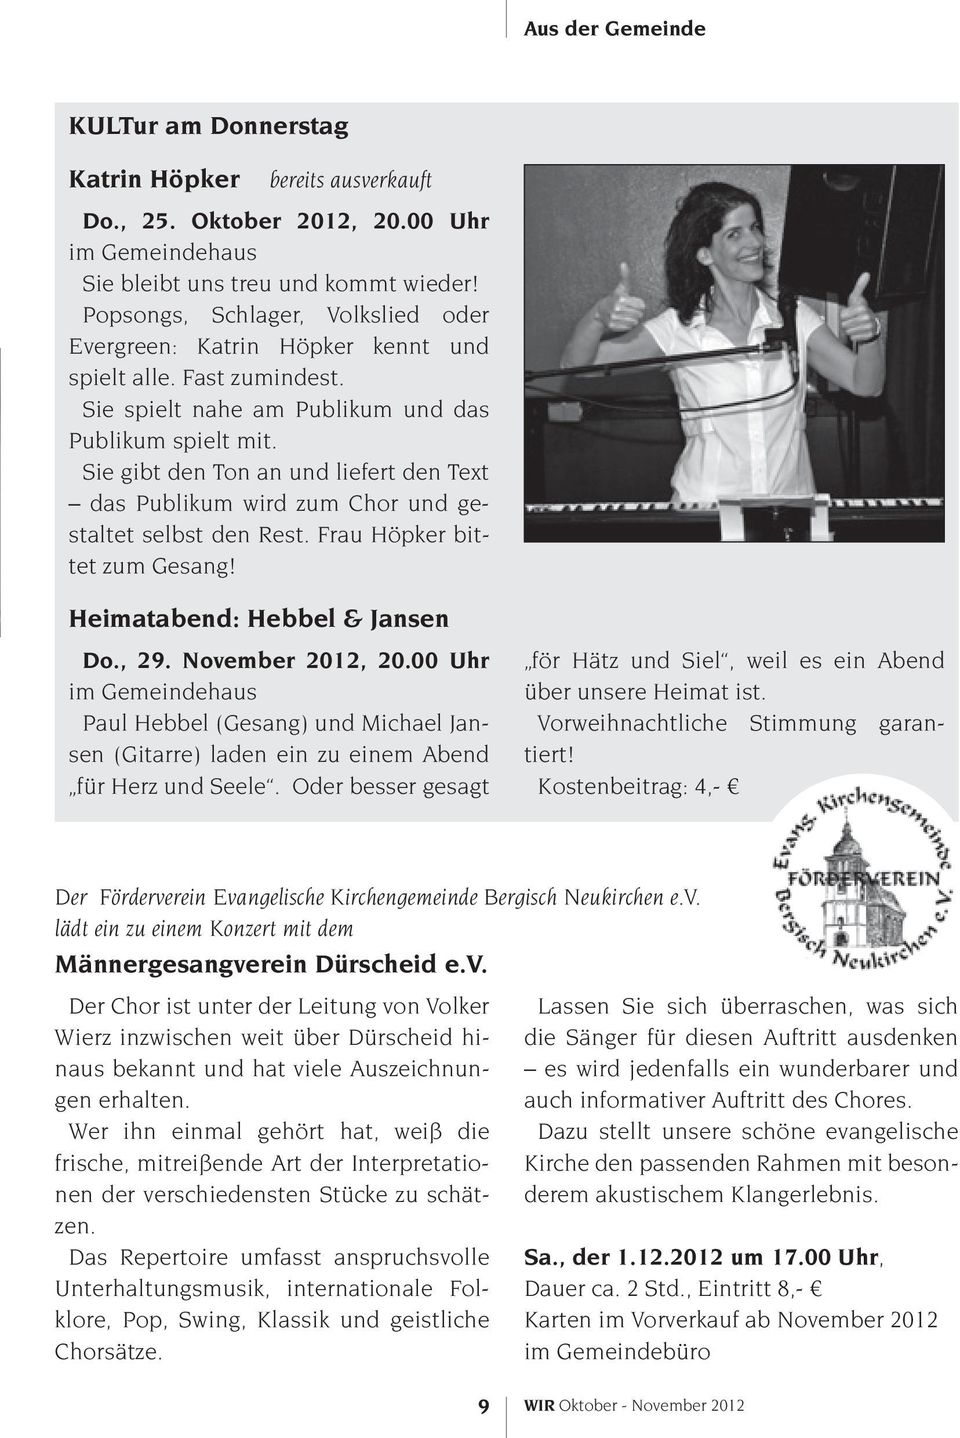 Sie gibt den Ton an und liefert den Text das Publikum wird zum Chor und gestaltet selbst den Rest. Frau Höpker bittet zum Gesang! Heimatabend: Hebbel & Jansen Do., 29. November 2012, 20.